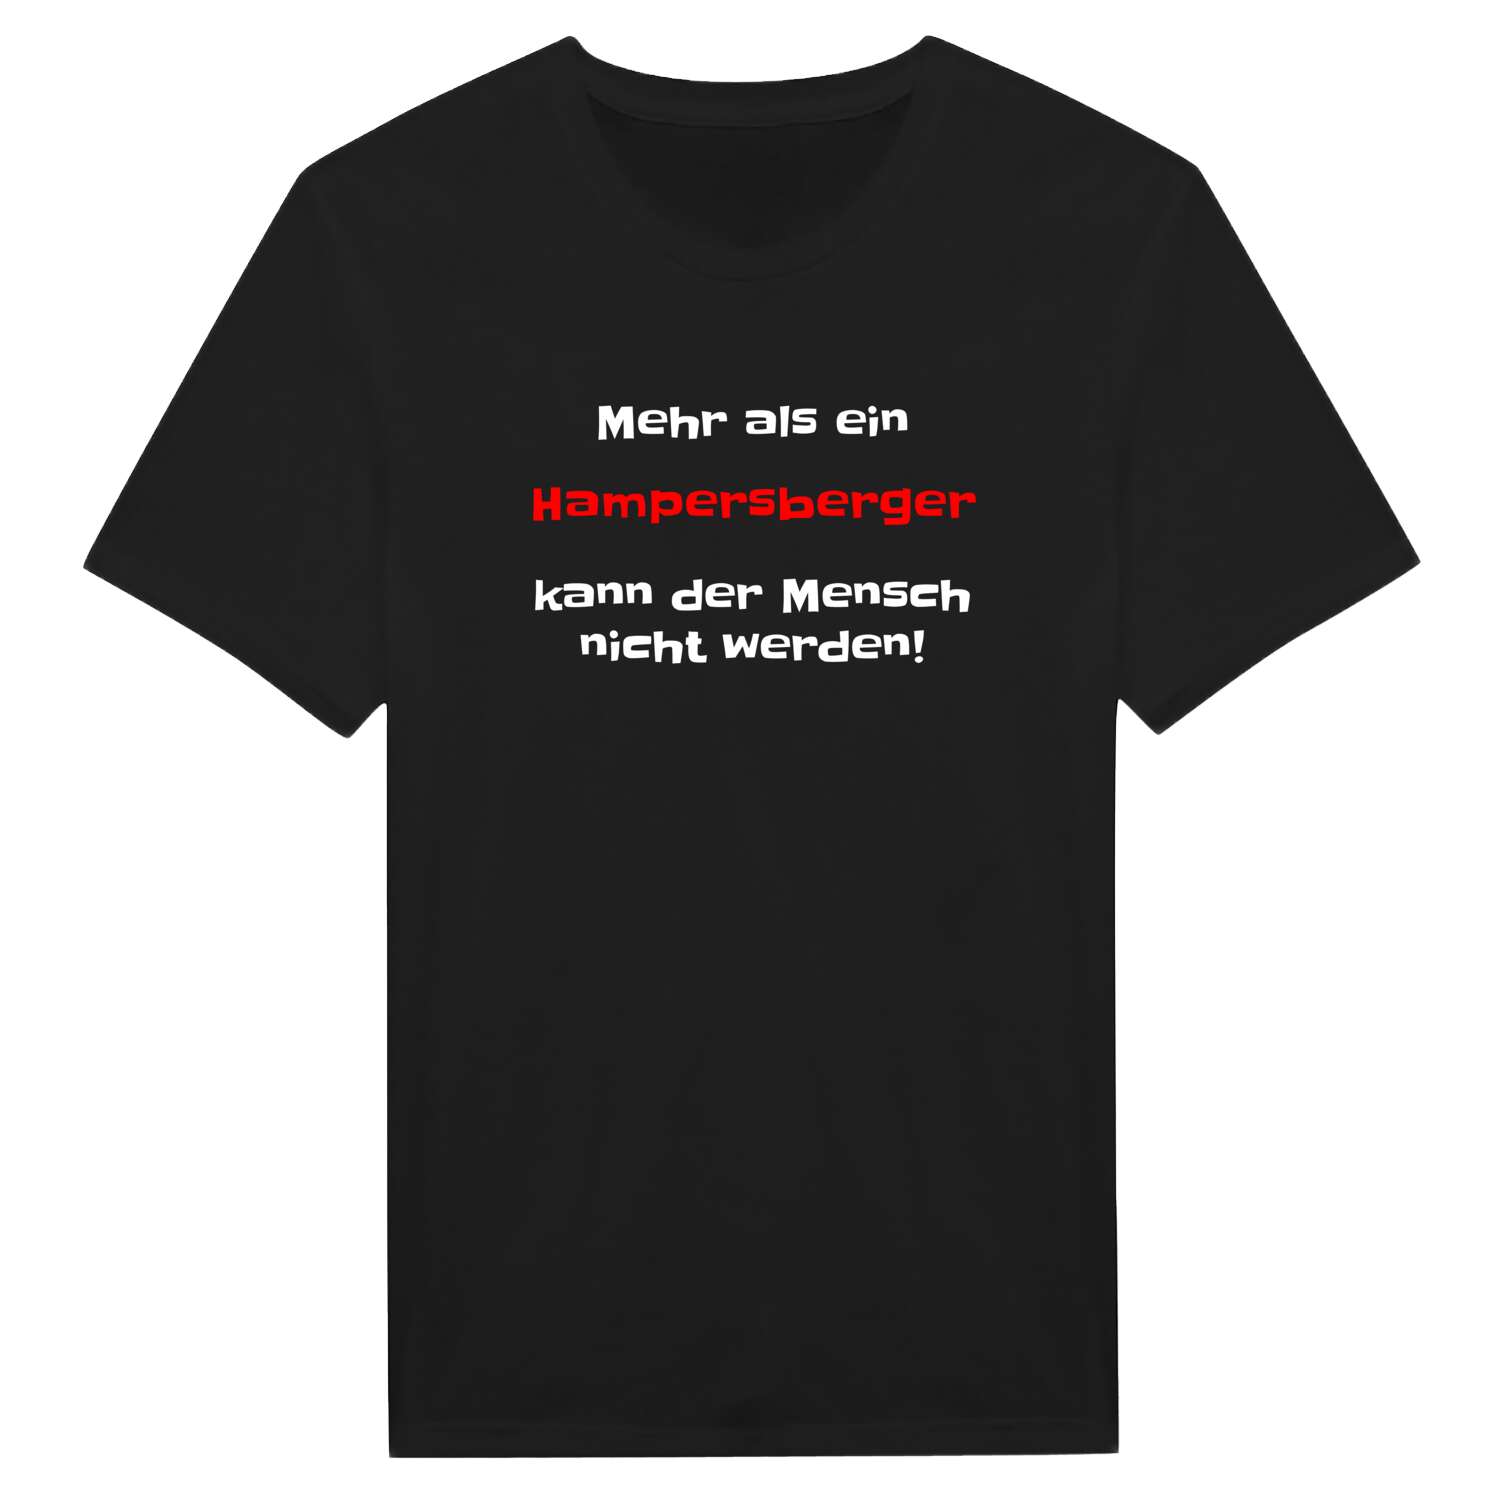 Hampersberg T-Shirt »Mehr als ein«